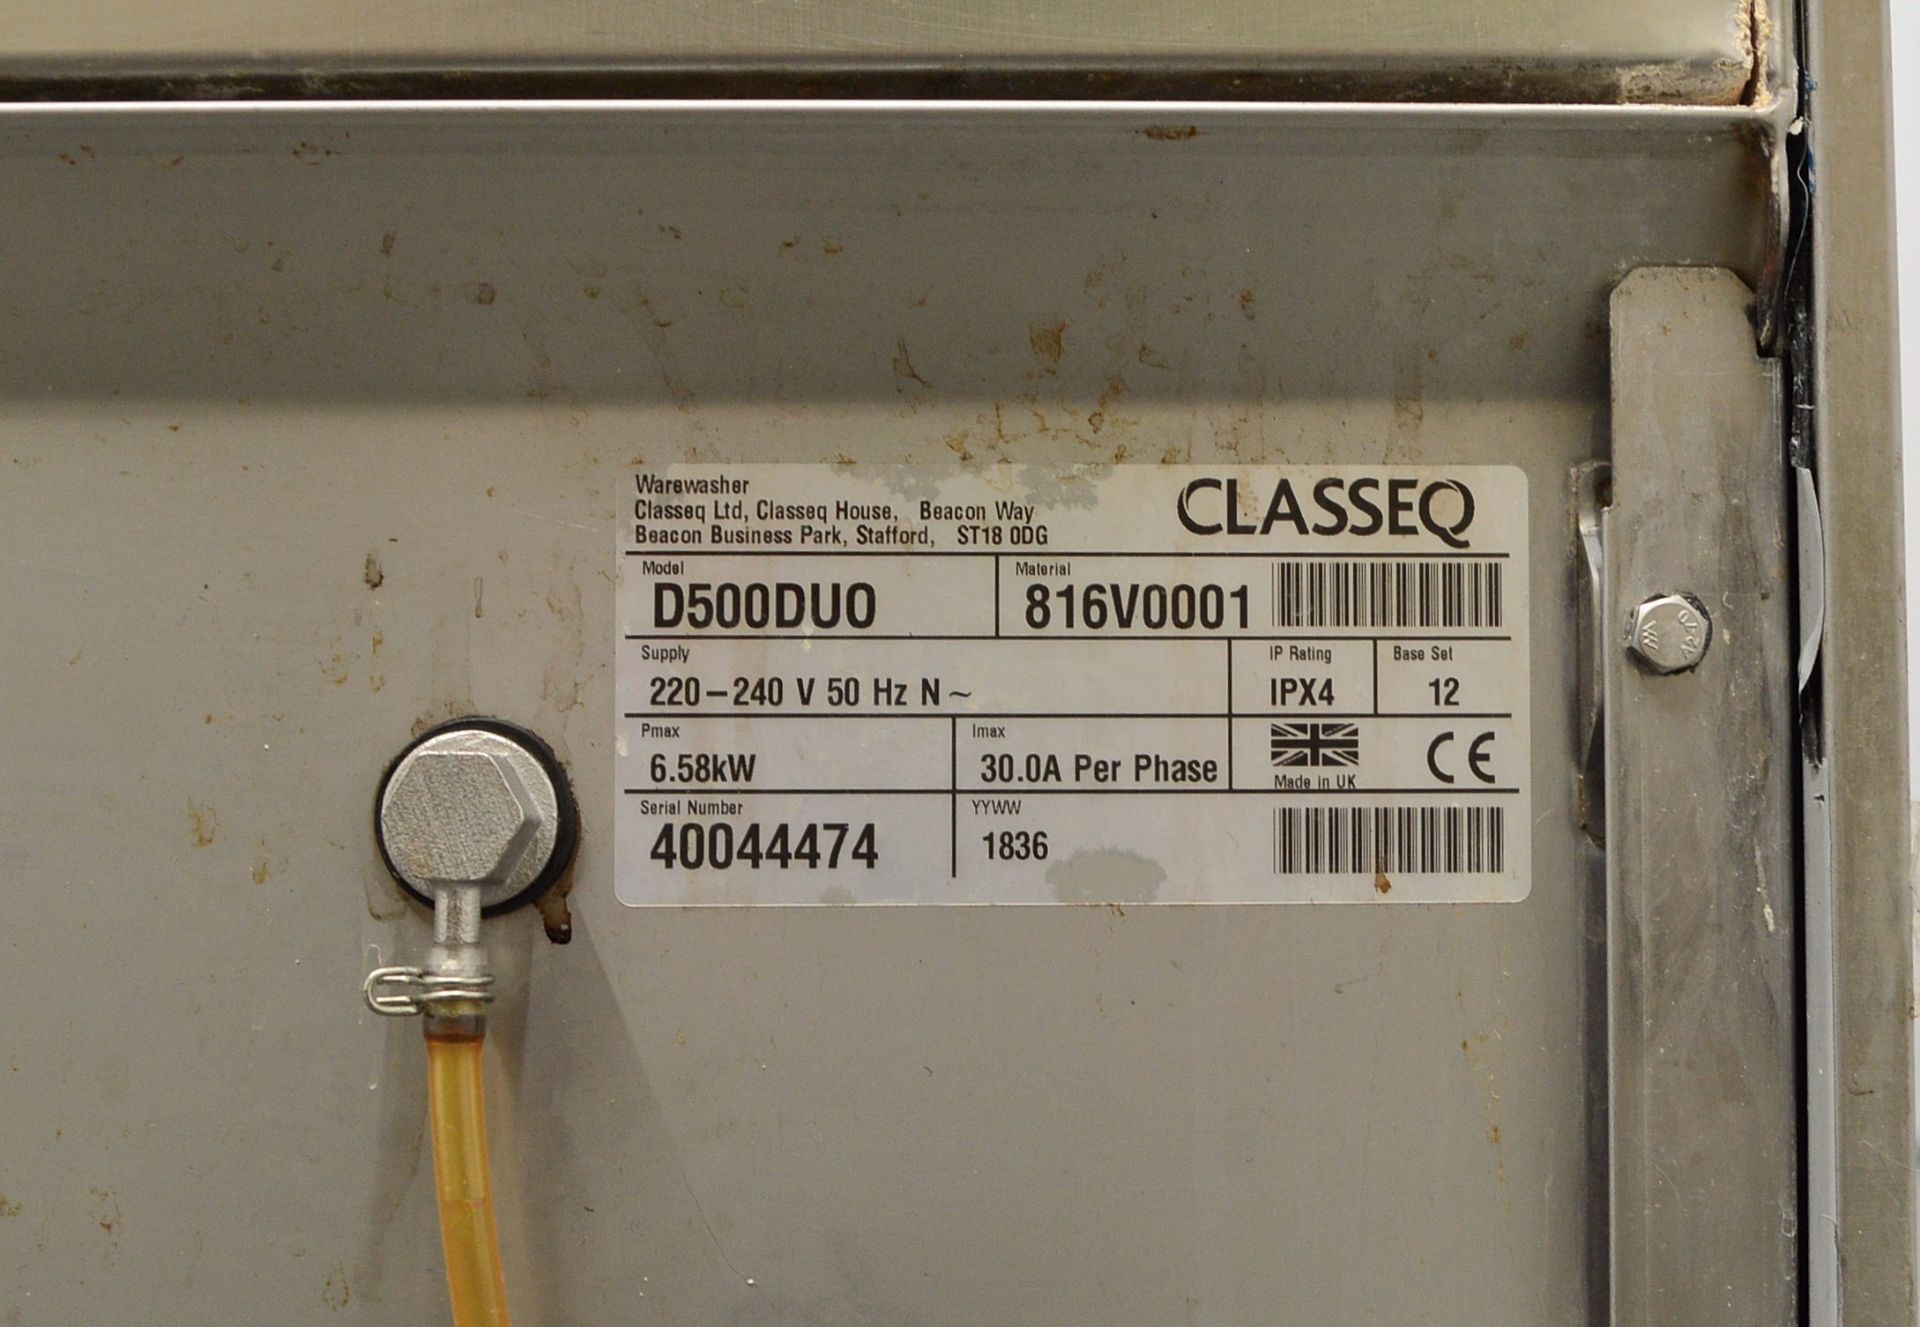 Class EQ 816V0001 240V Dishwasher. - Image 4 of 6